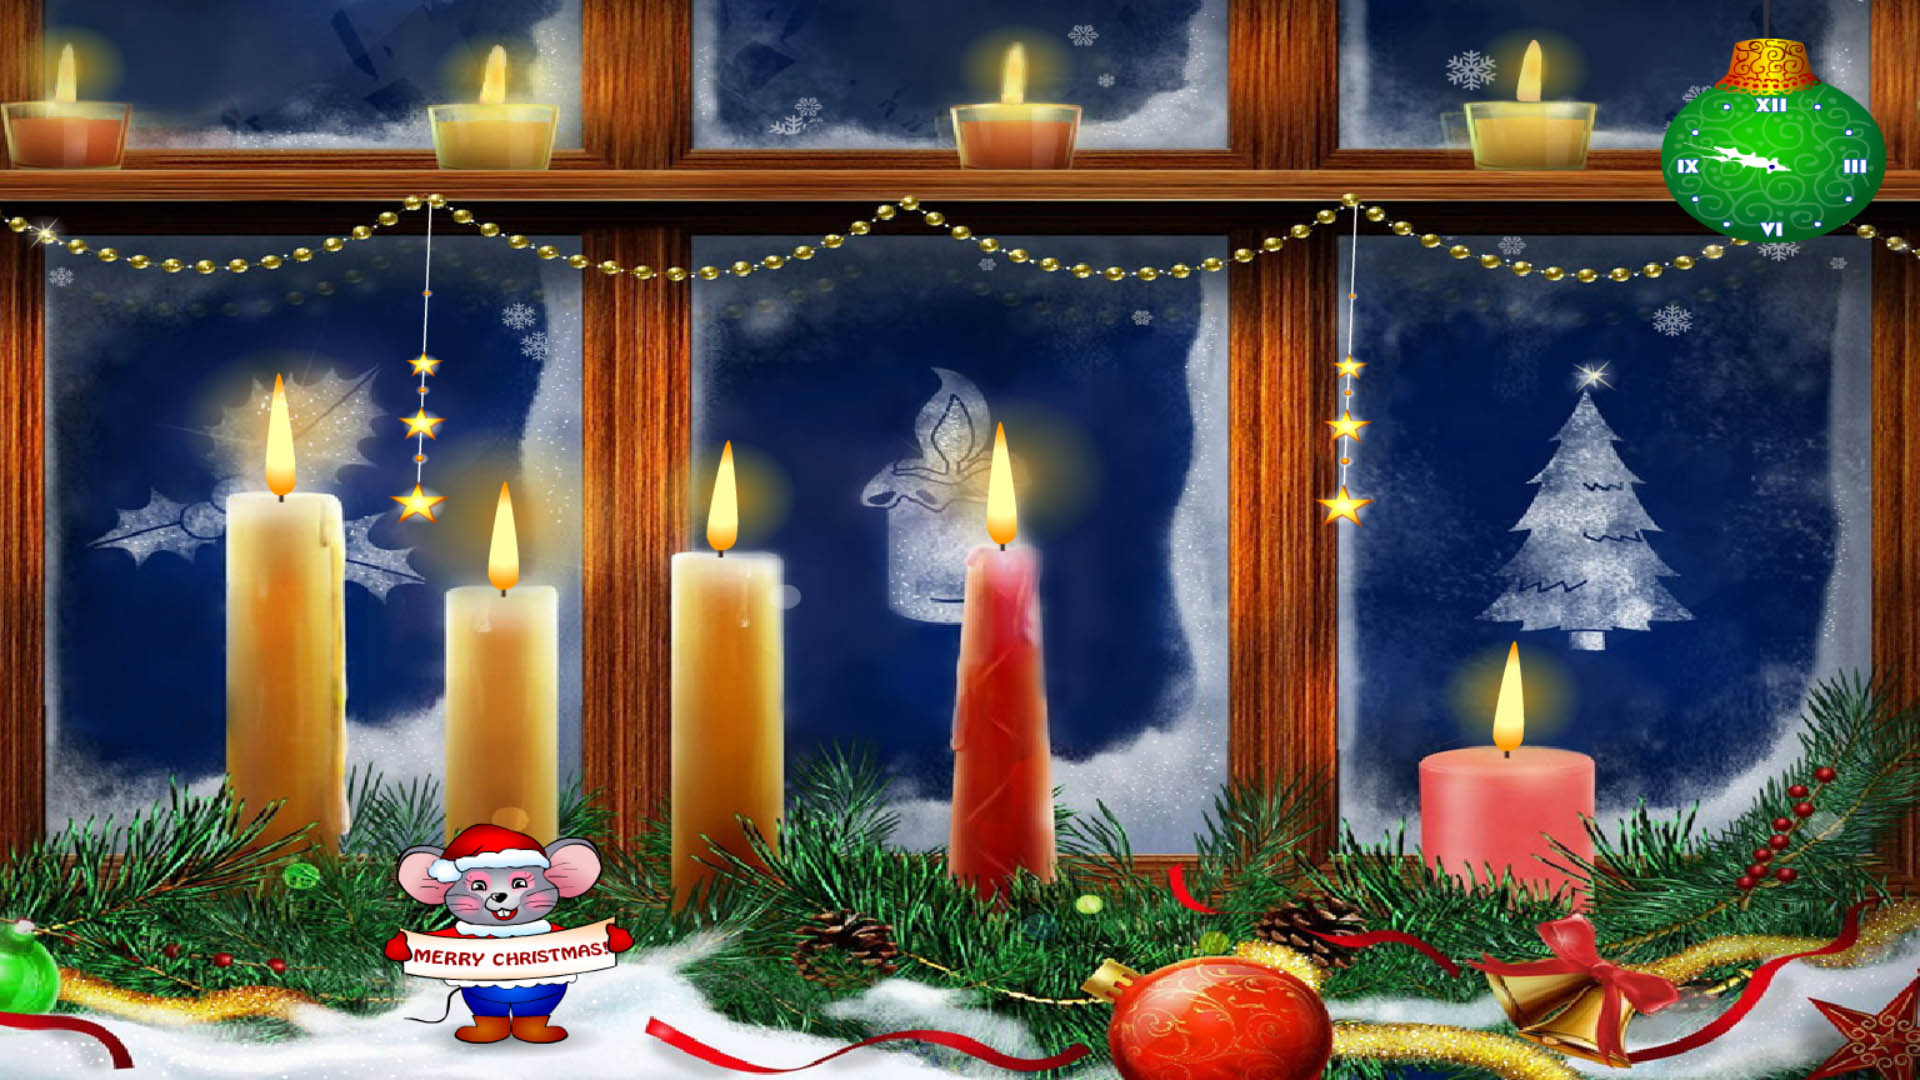 Windows 10 New Christmas Scrensaver - Christmas Candles Screensaver